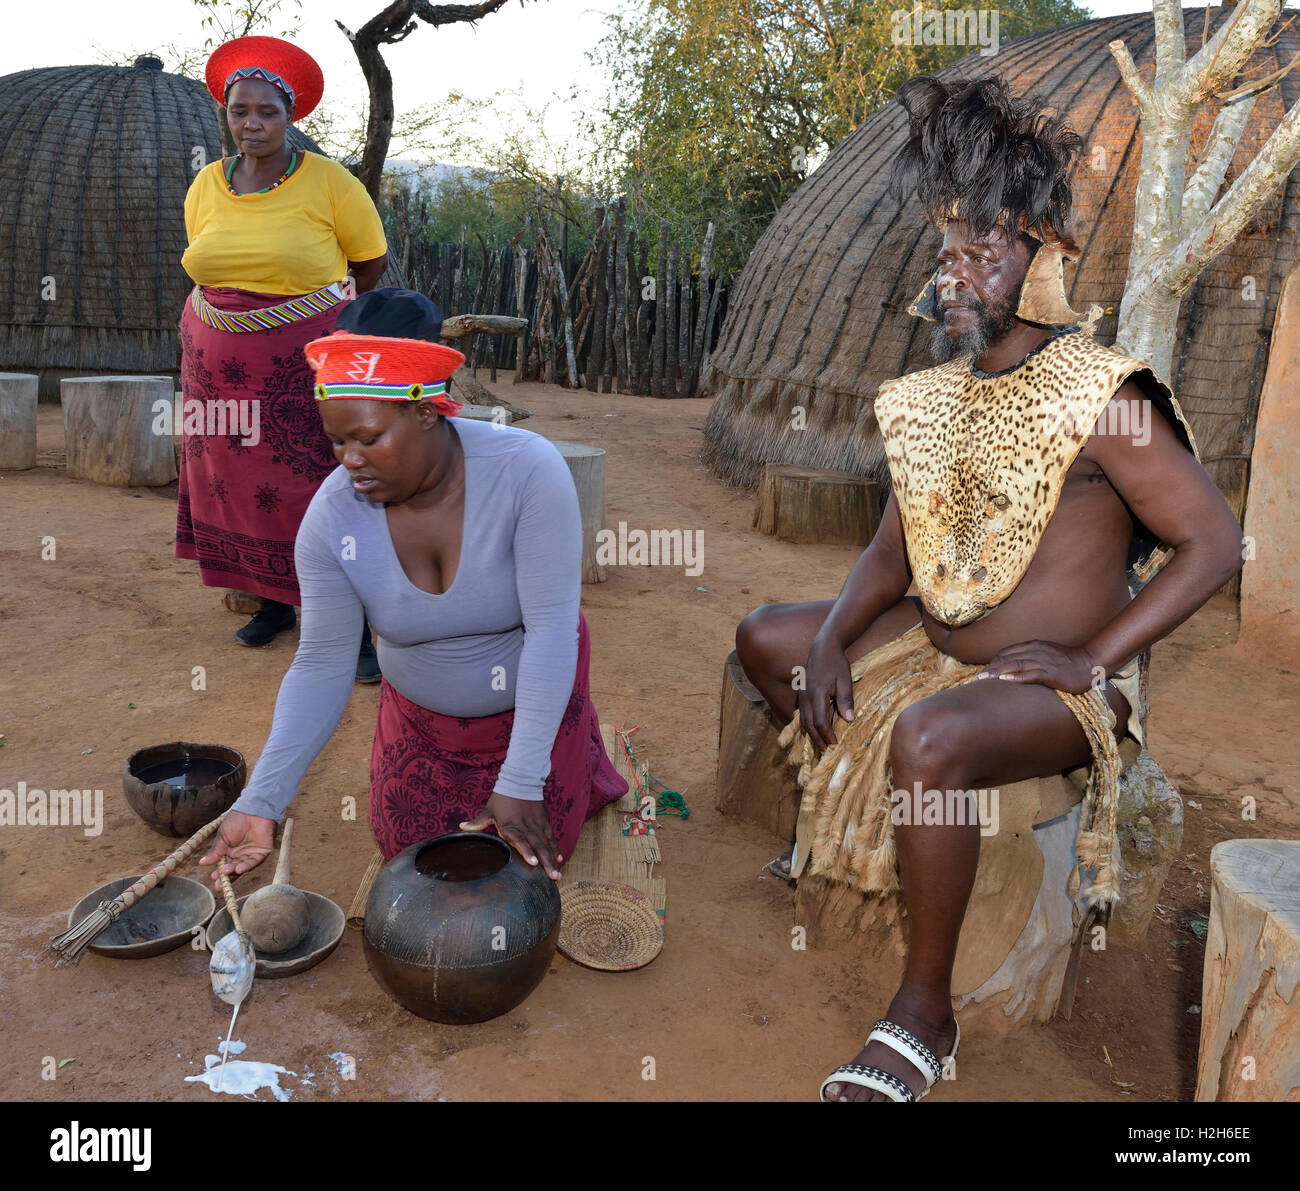 Shakaland Zulu Truppe Mitglieder re-enacting Zulu häusliches Leben - Serving Amasi (lockige Milch), mit dem Zulu König sitzen. Eshowe, Südafrika Stockfoto